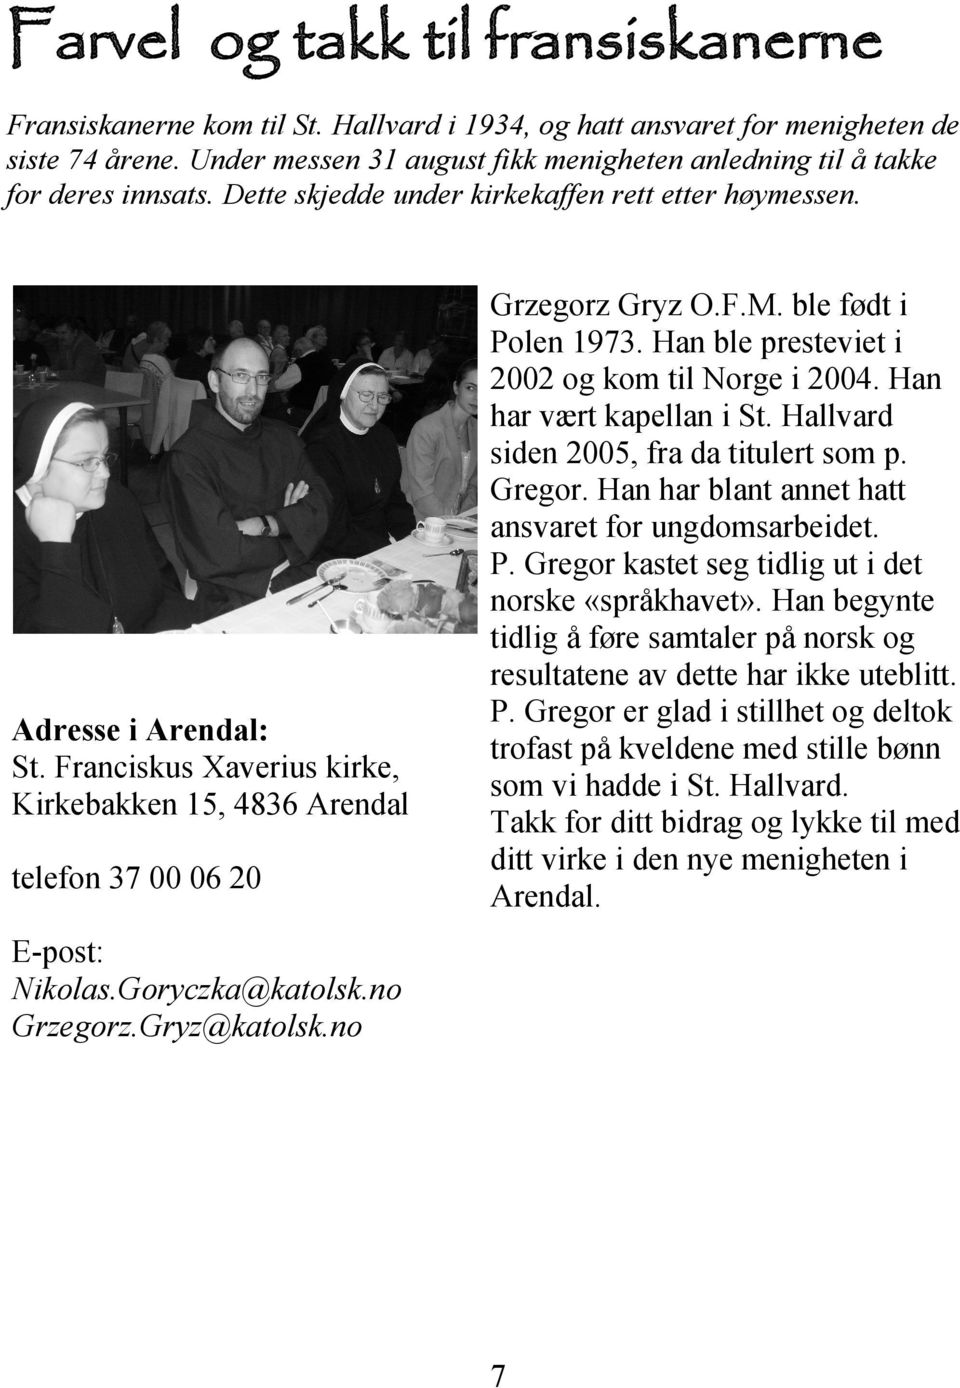 Franciskus Xaverius kirke, Kirkebakken 15, 4836 Arendal telefon 37 00 06 20 Grzegorz Gryz O.F.M. ble født i Polen 1973. Han ble presteviet i 2002 og kom til Norge i 2004. Han har vært kapellan i St.